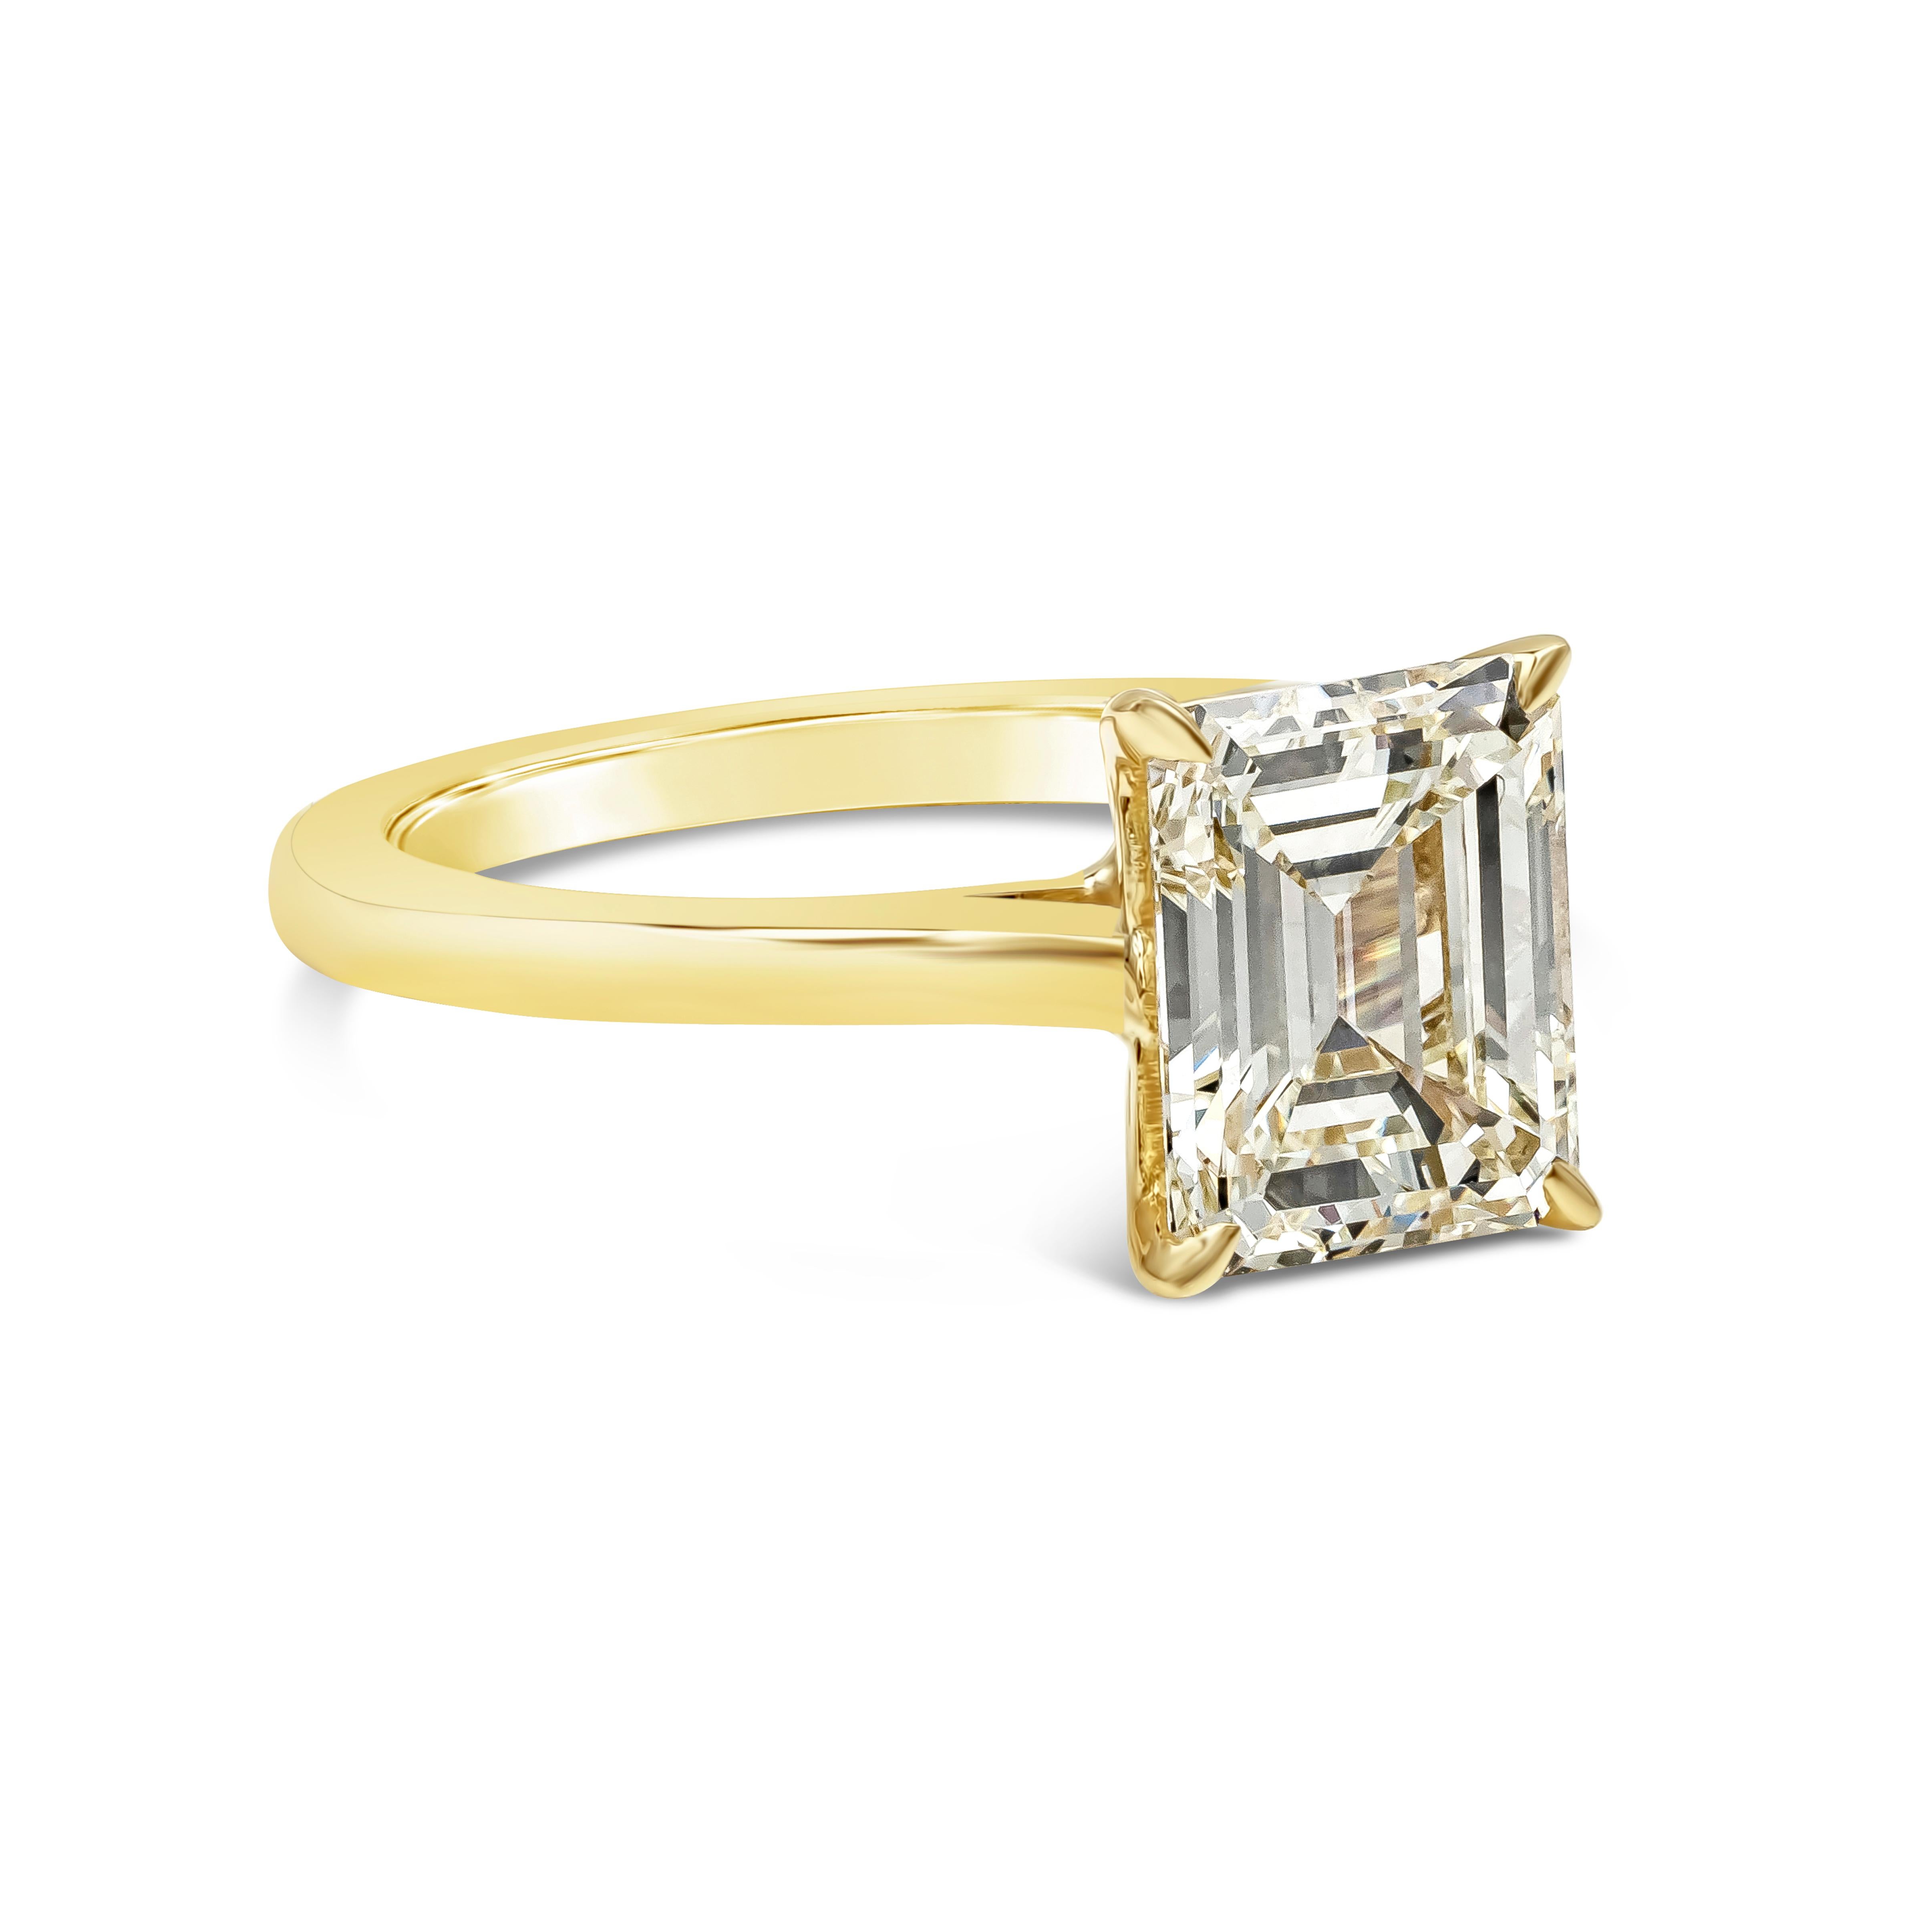 Bague de fiançailles solitaire classique mettant en valeur un diamant taille émeraude de 2,30 carats certifié par le GIA de couleur M et de pureté VVS2. Le diamant est serti sur une monture en or jaune 18k poli. Taille 6 US (taille ajustable sur